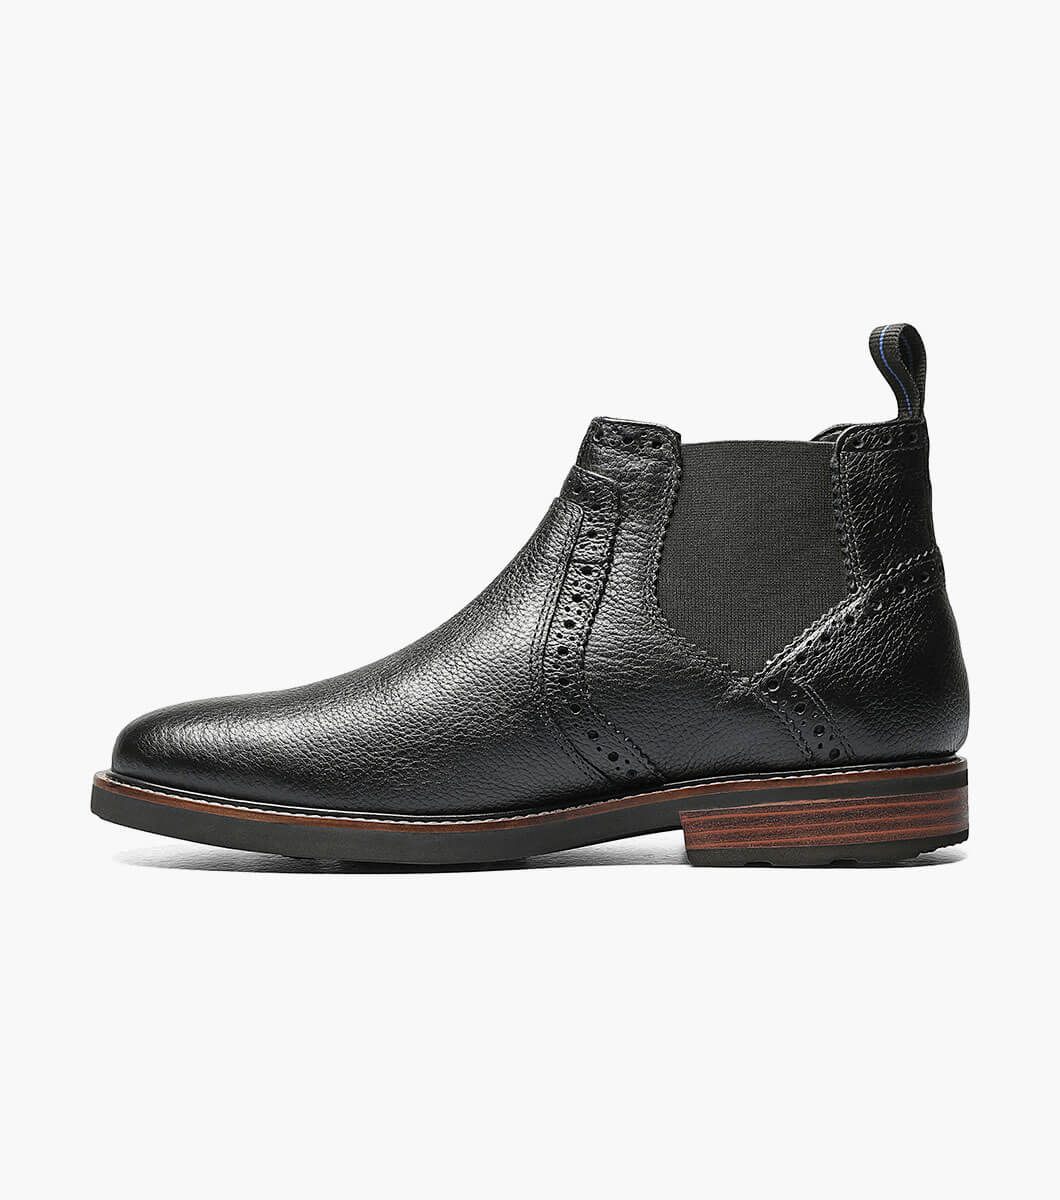 Nunn Bush Otis Men's Black Tumbled Leather Chelsea Boots 84778-007 